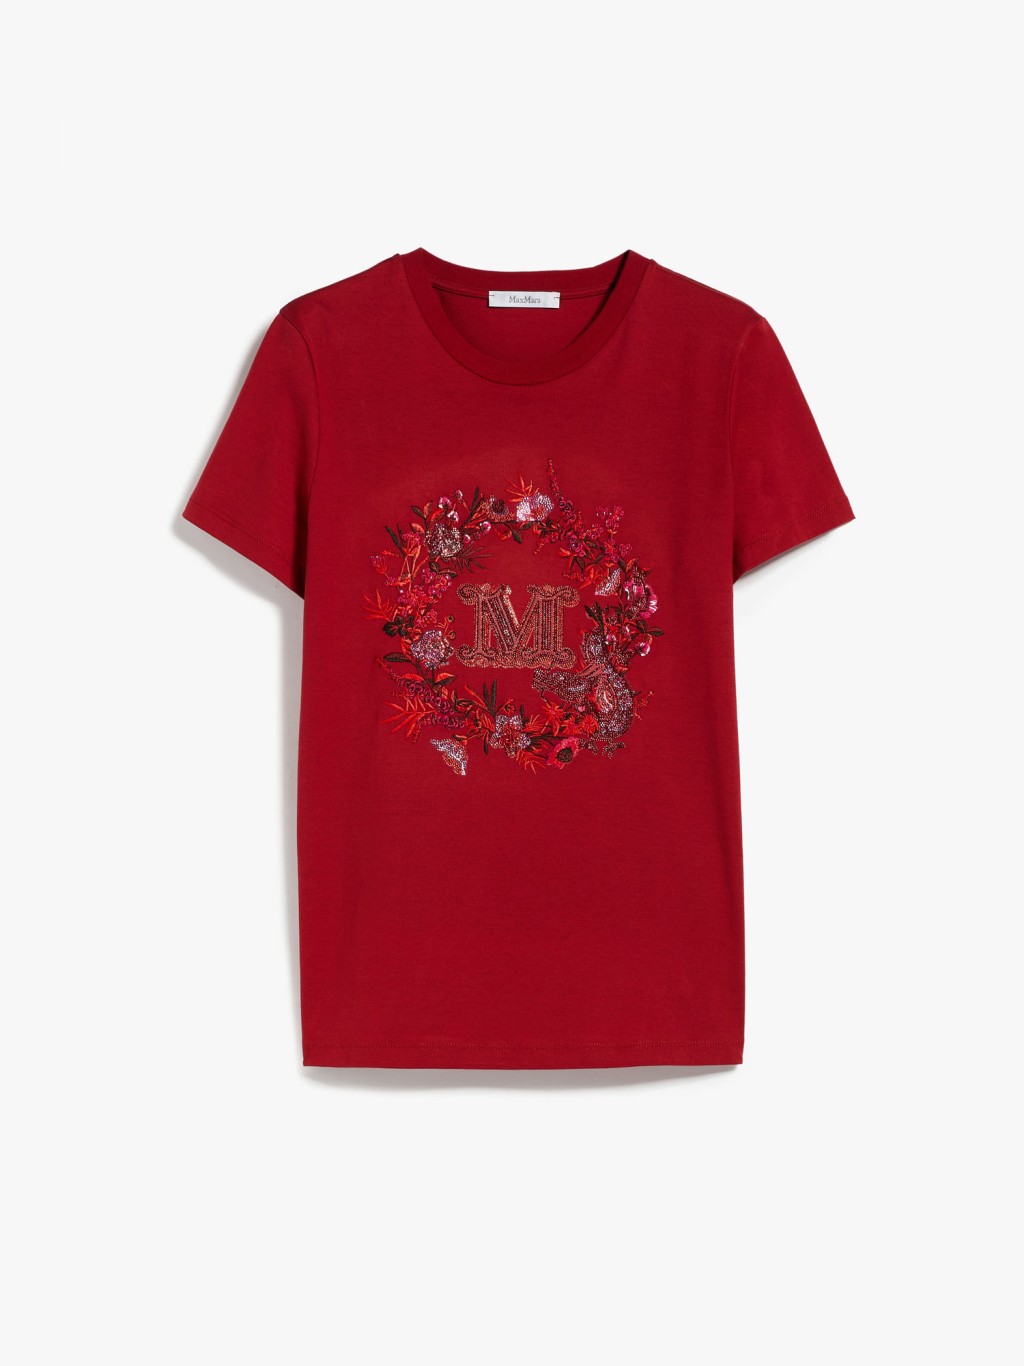 Max Mara新春特别系列的红色T恤，印上深浅不一的红色调花卉图案，中间代表品牌的M字恍如被花环围绕。